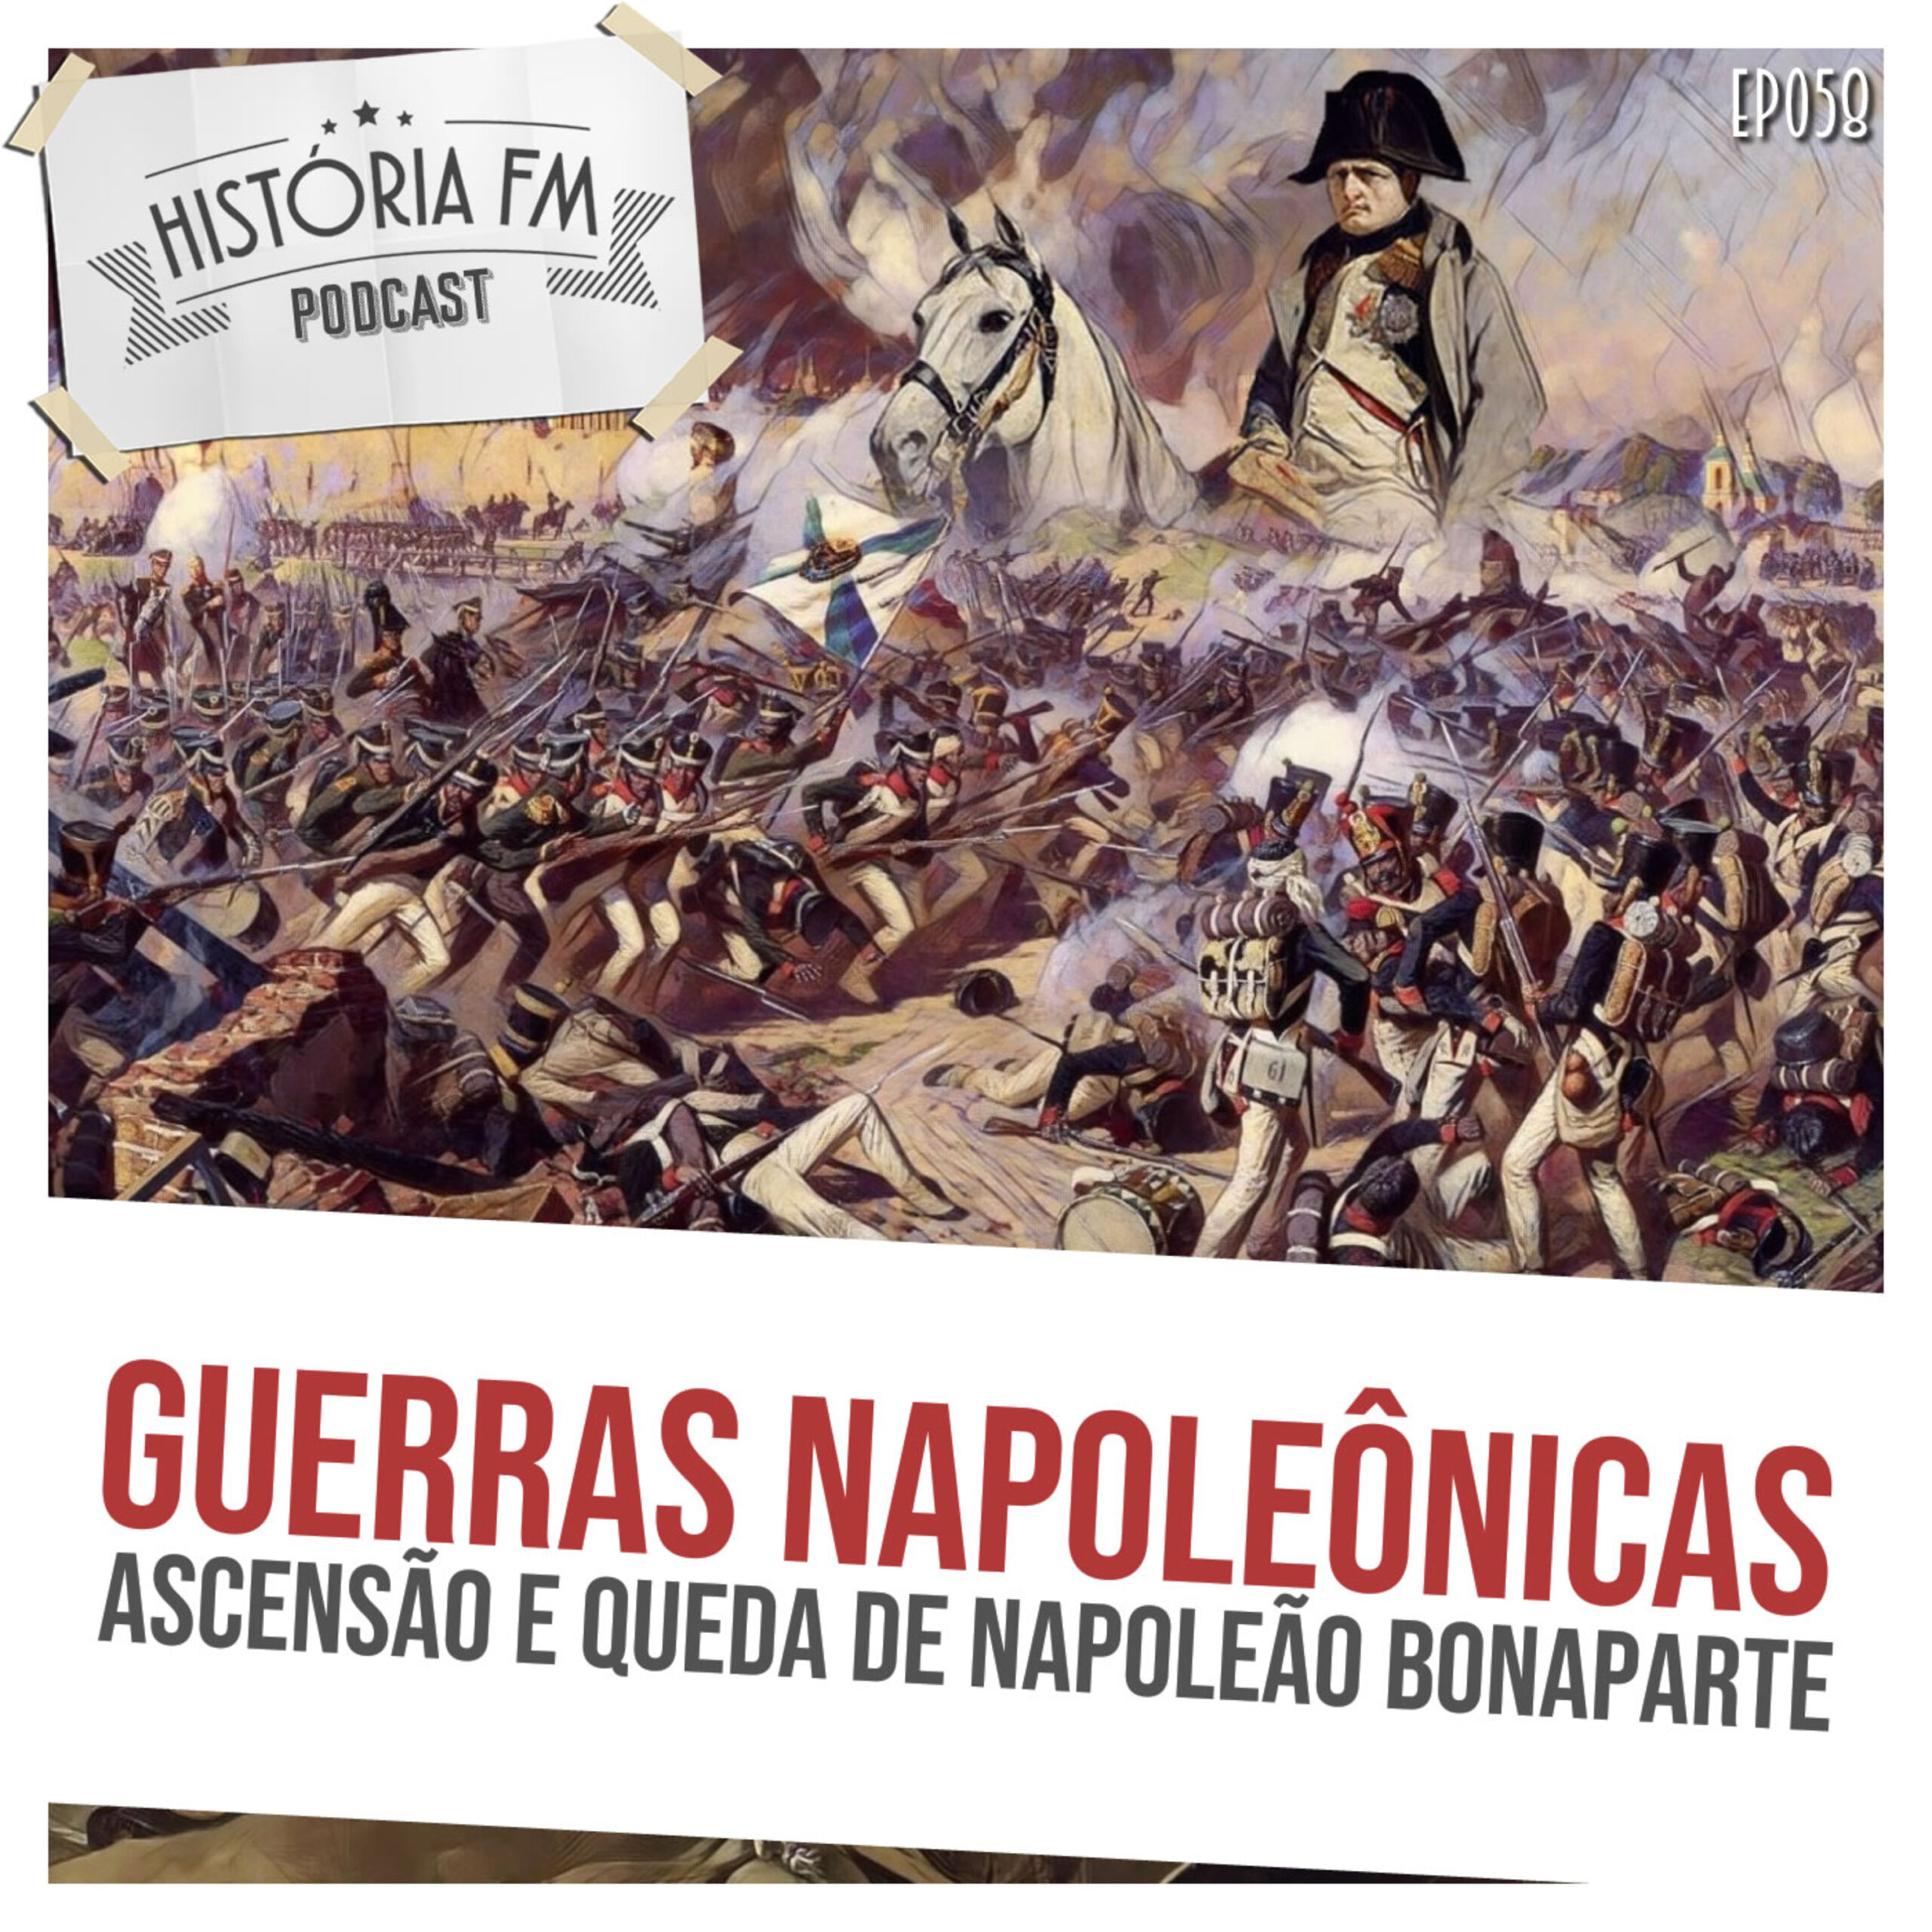 Guerras Napoleônicas: ascensão e queda de Napoleão Bonaparte